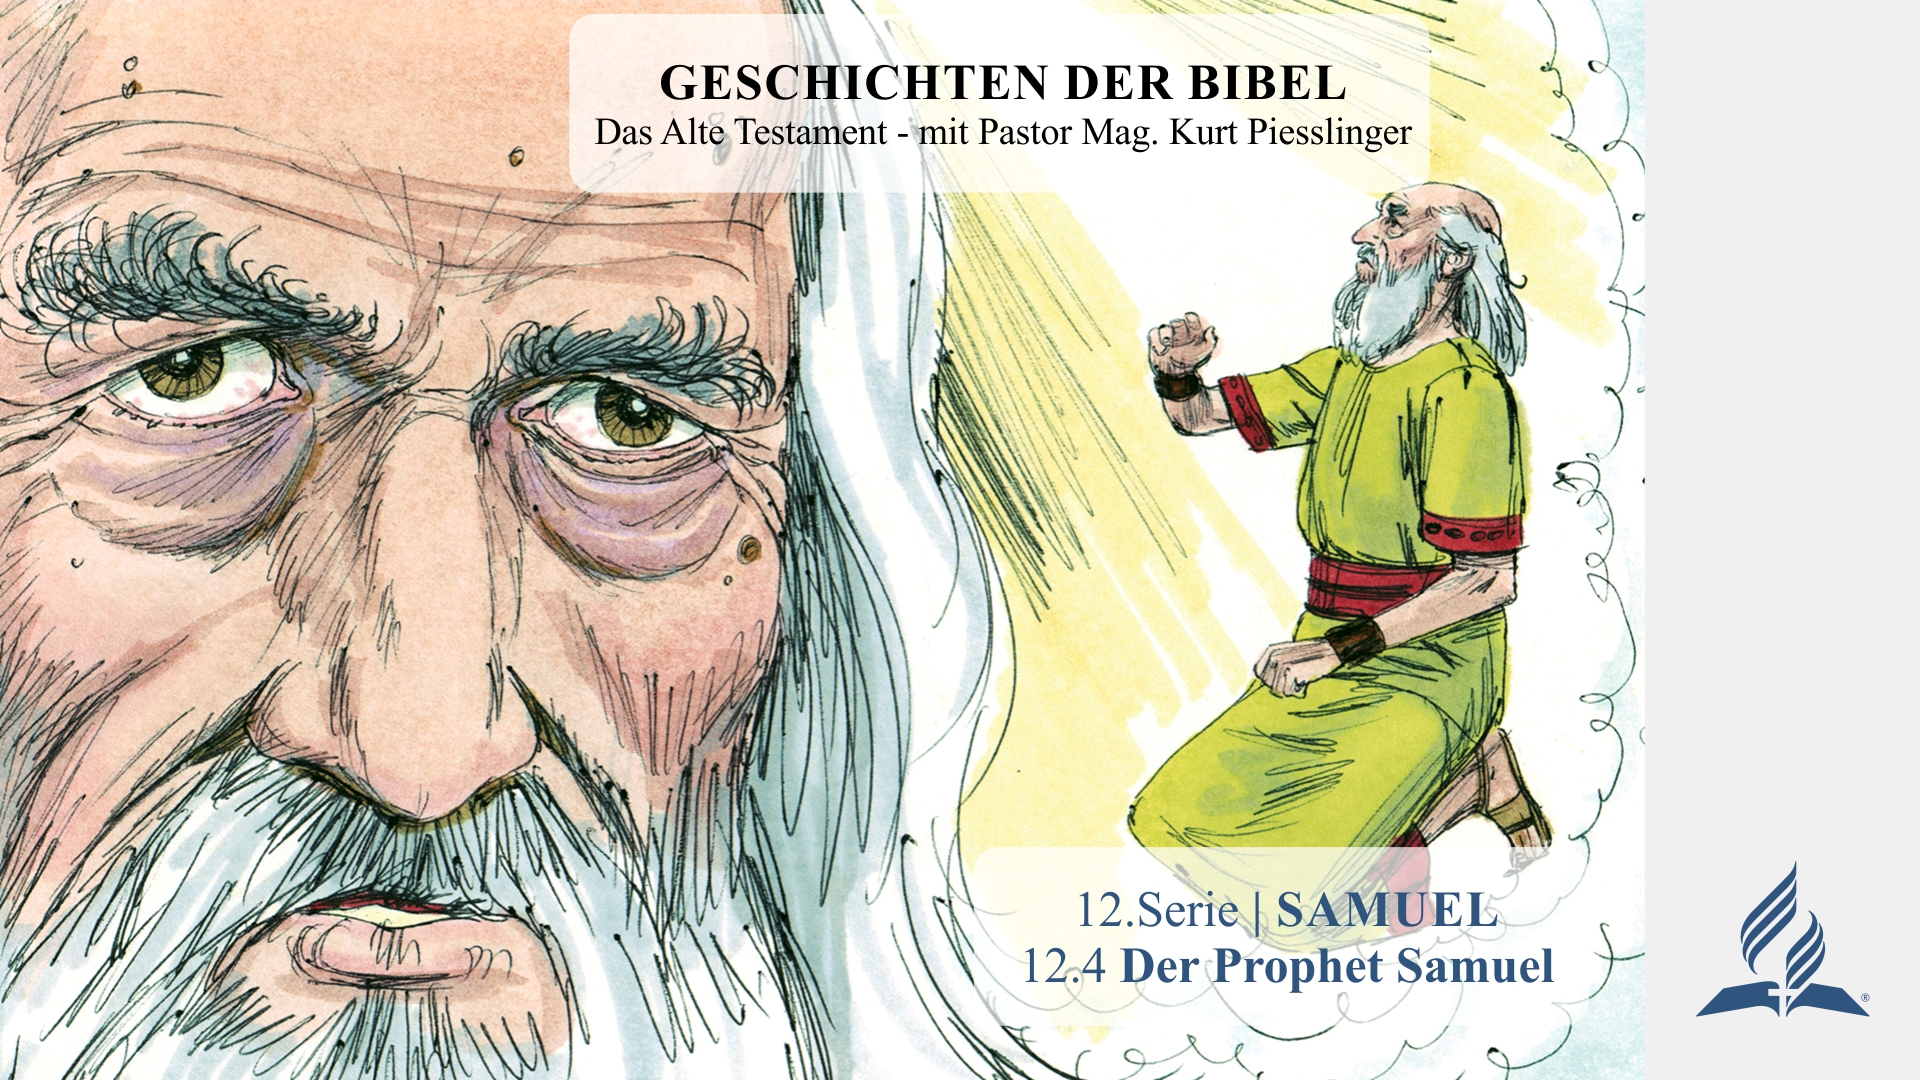 GESCHICHTEN DER BIBEL: 12.4 Der Prophet Samuel – 12.SAMUEL | Pastor Mag. Kurt Piesslinger